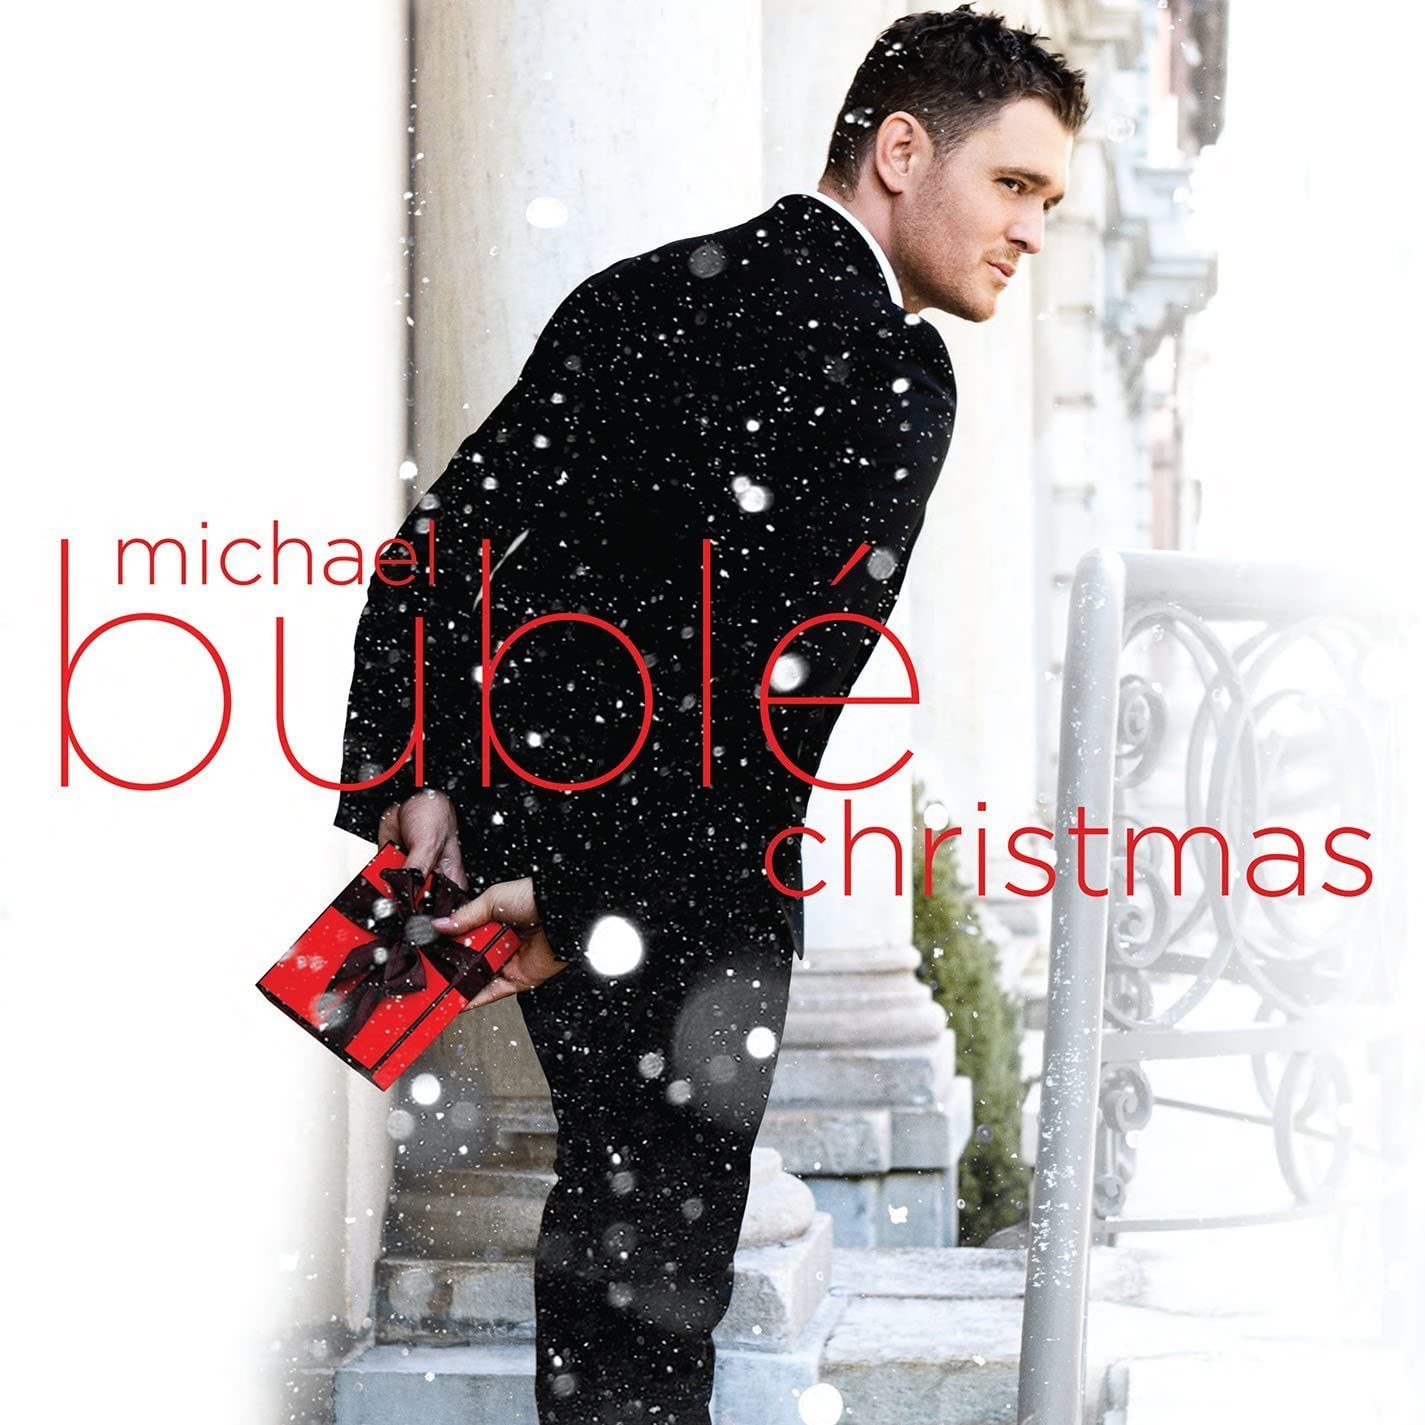 Michael Bubblé - Christmas